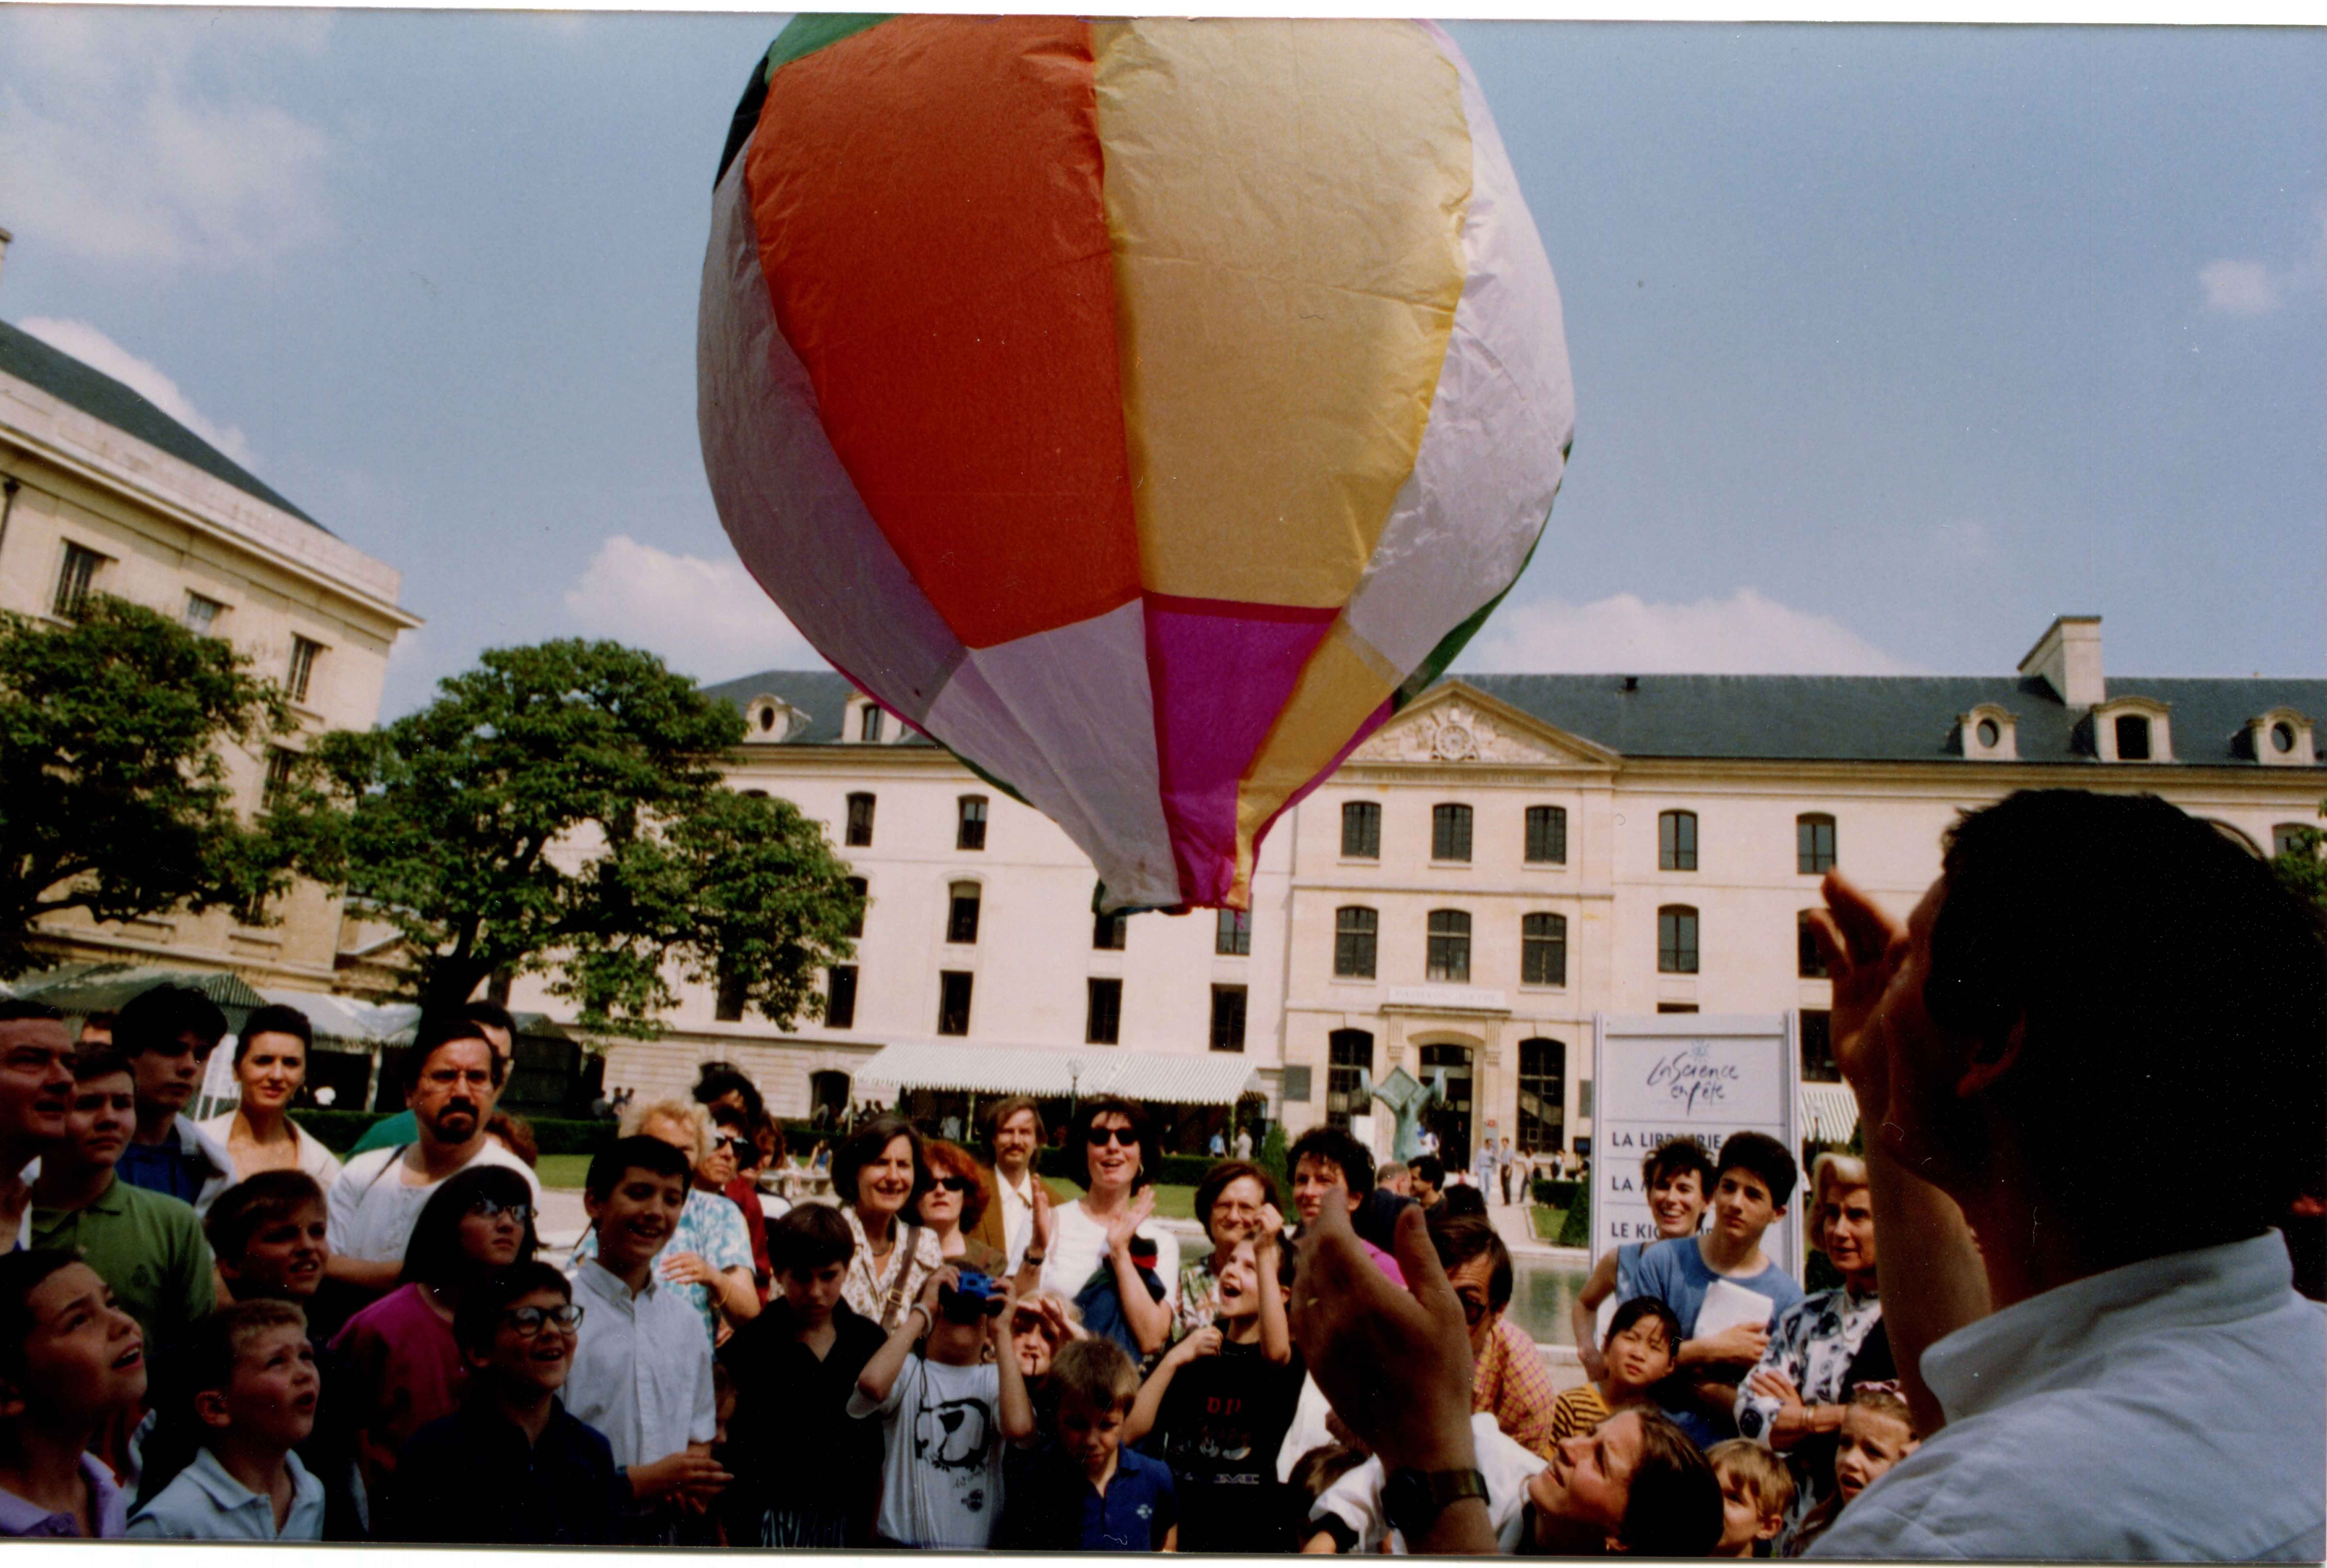 La fête de la science, 1992